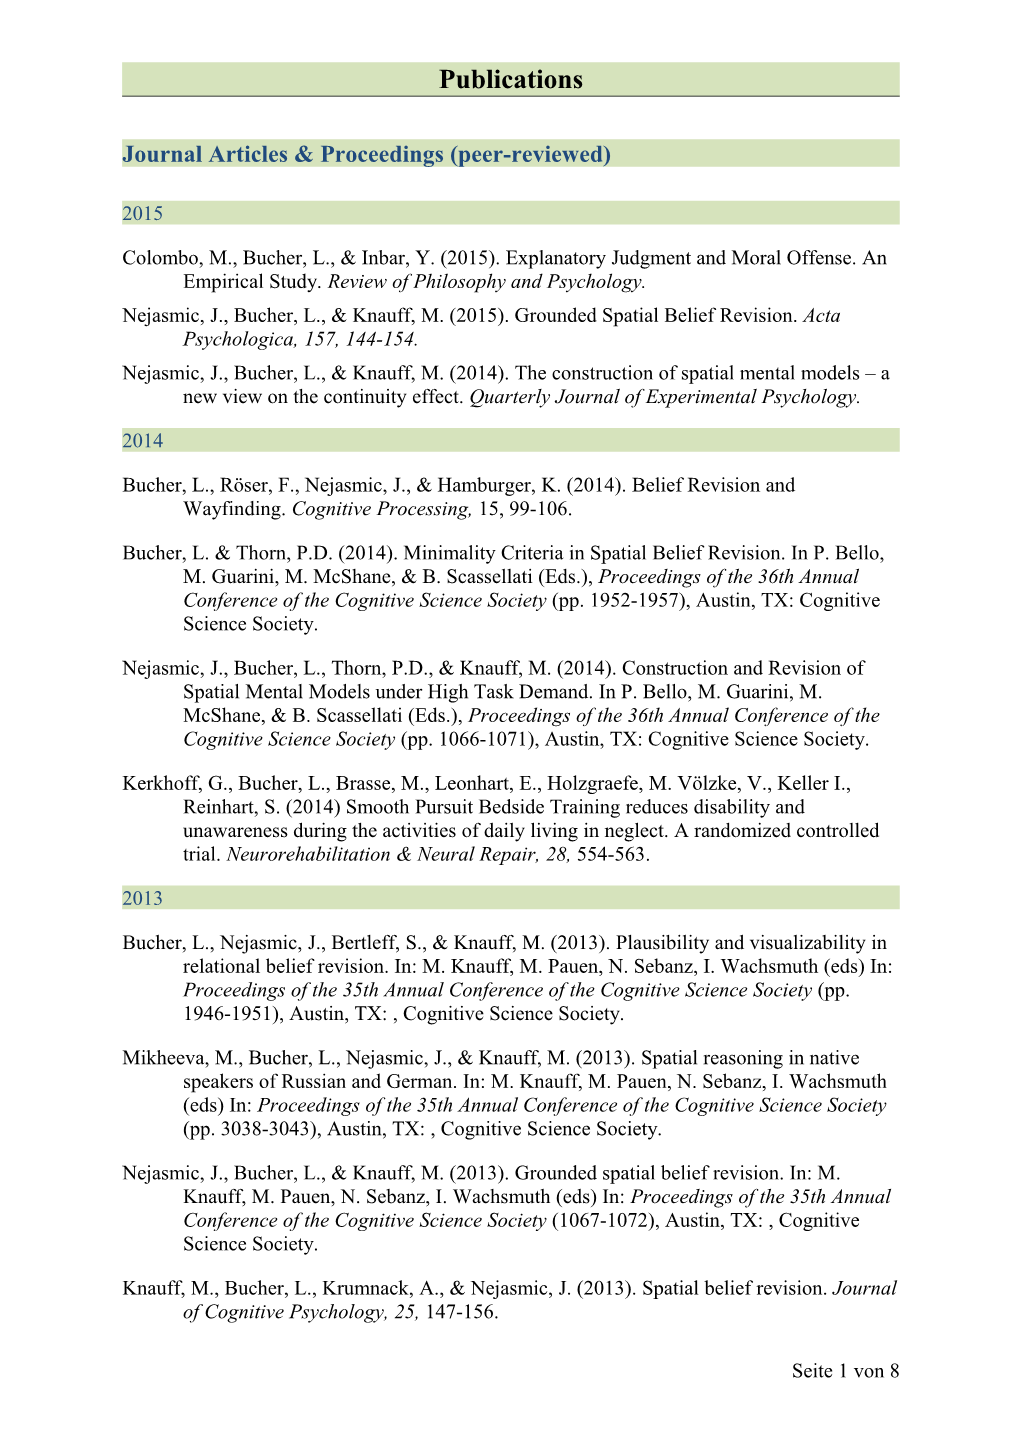 Journal Articles & Proceedings (Peer-Reviewed)